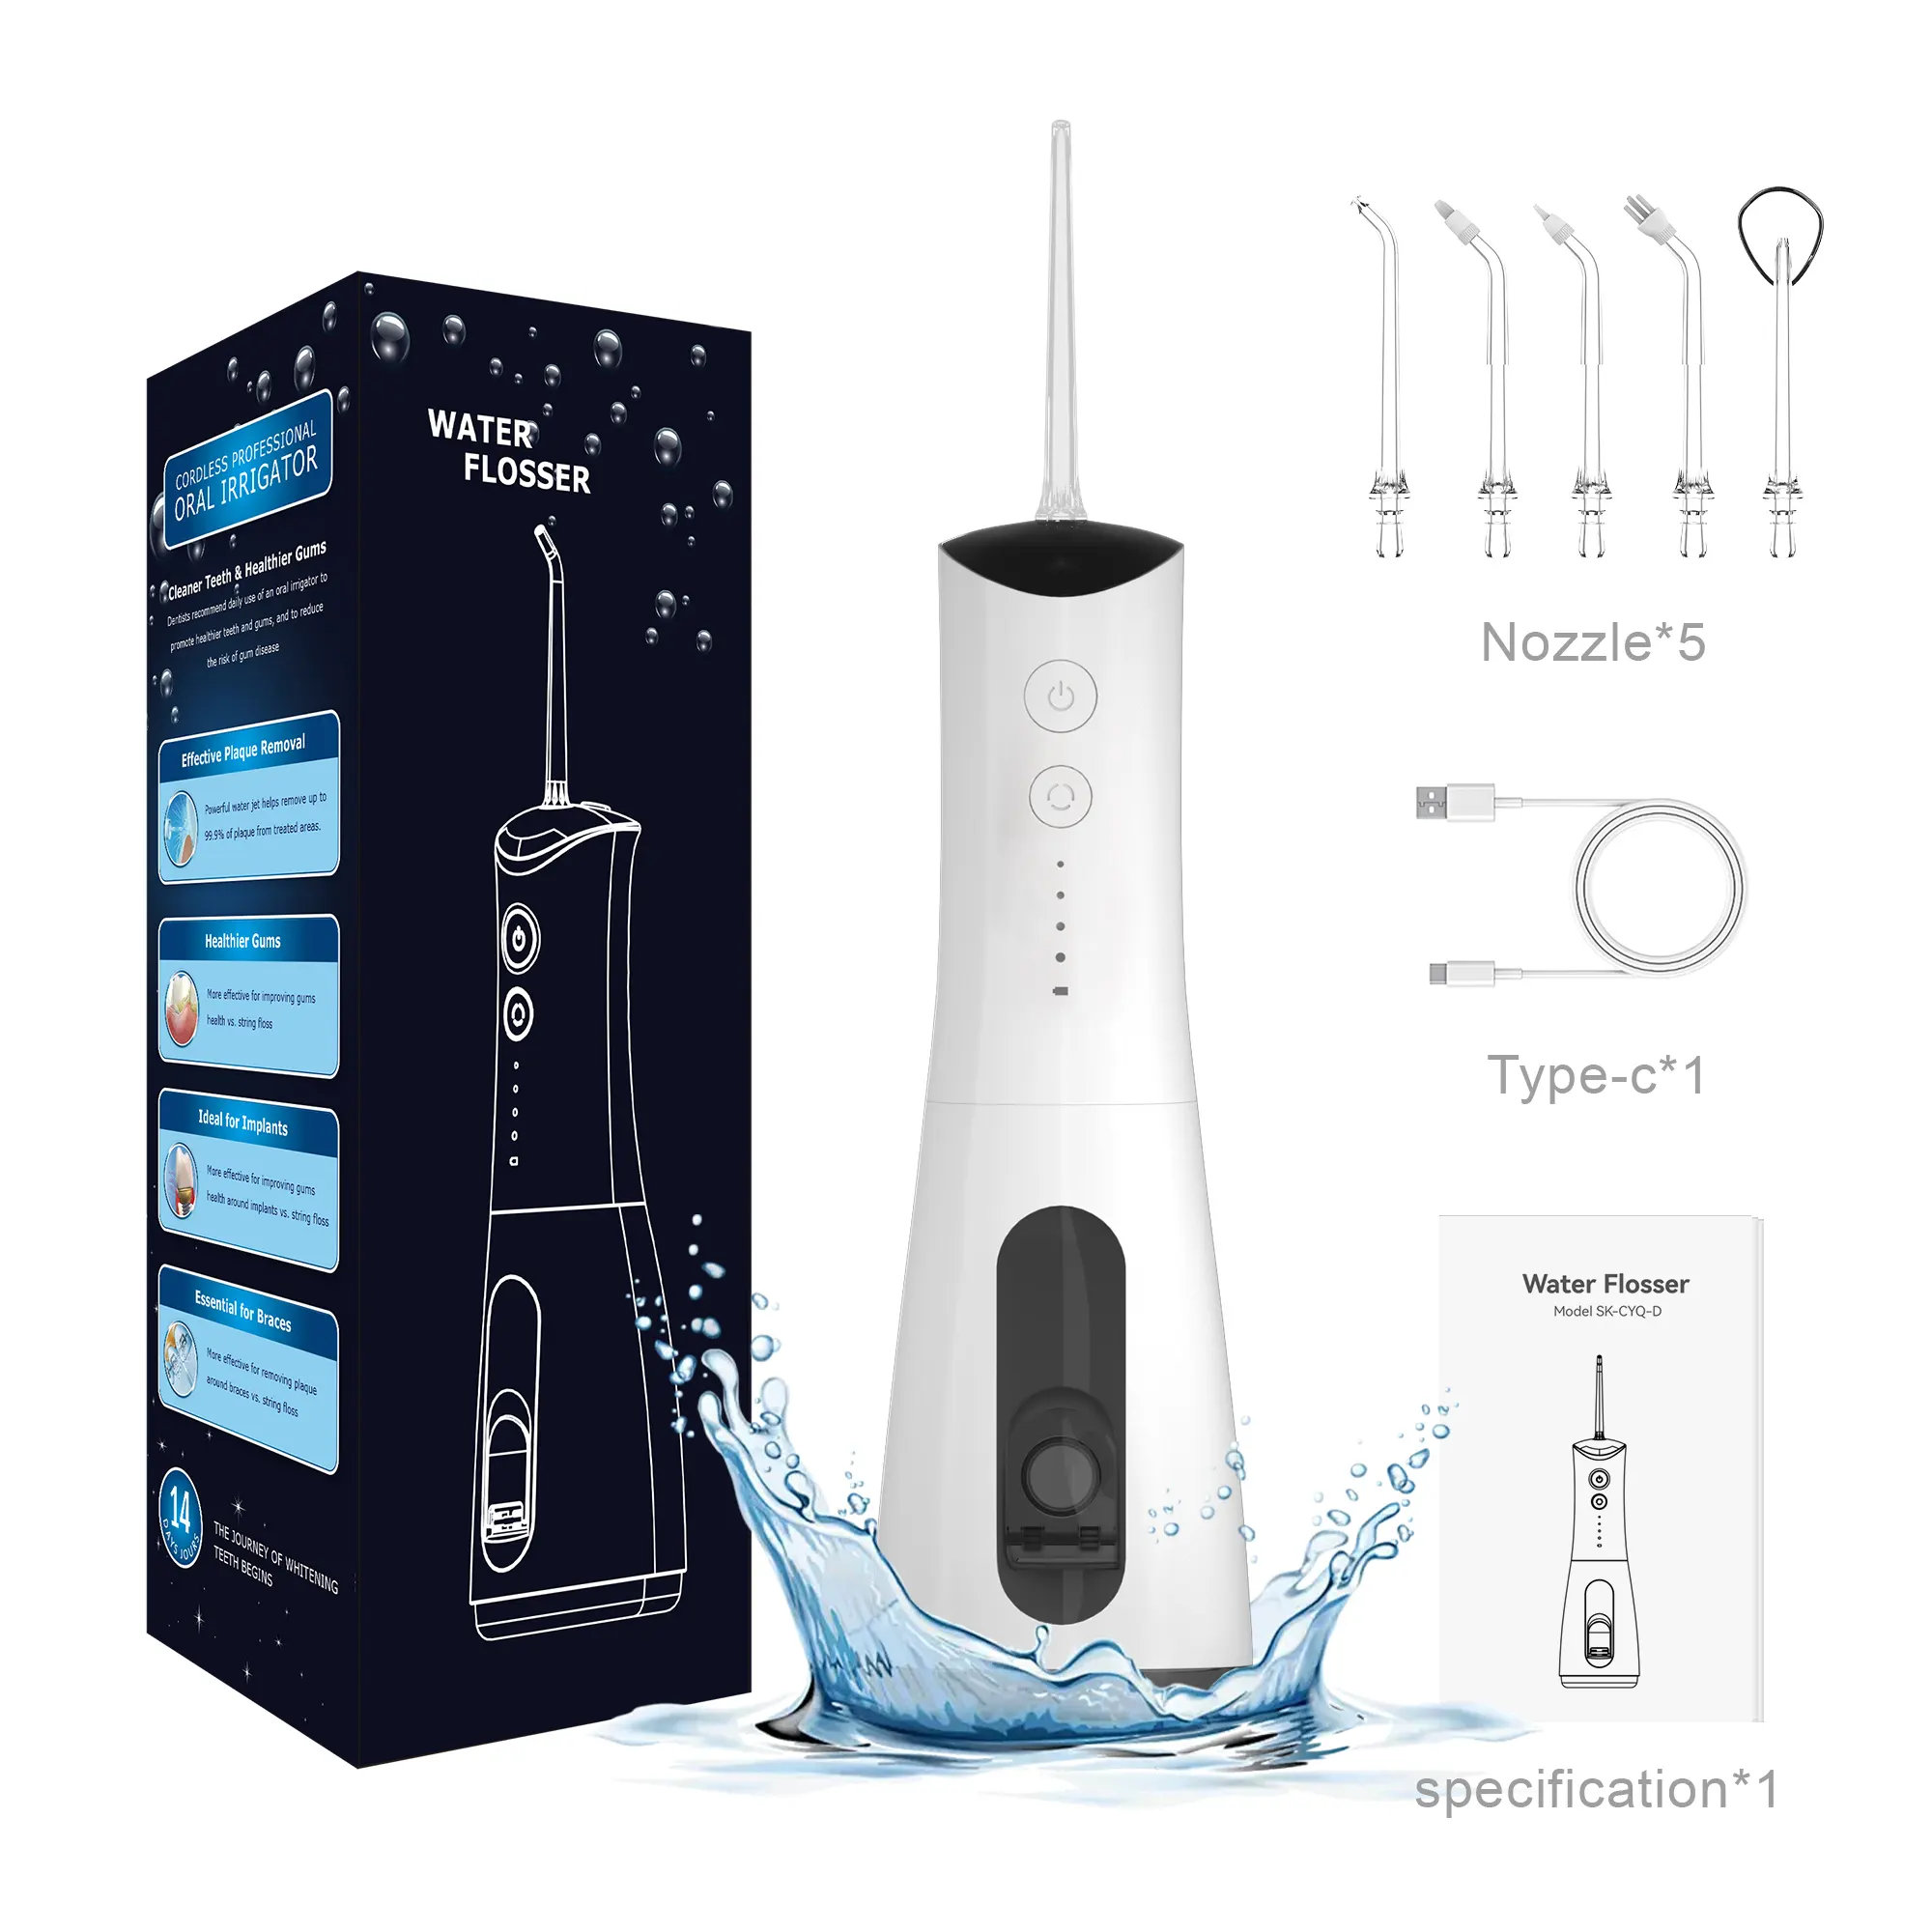 Siillk limpador de dentes profissional 300ml multifuncional IPX7 recarregável USB à prova d'água portátil para uso ao ar livre